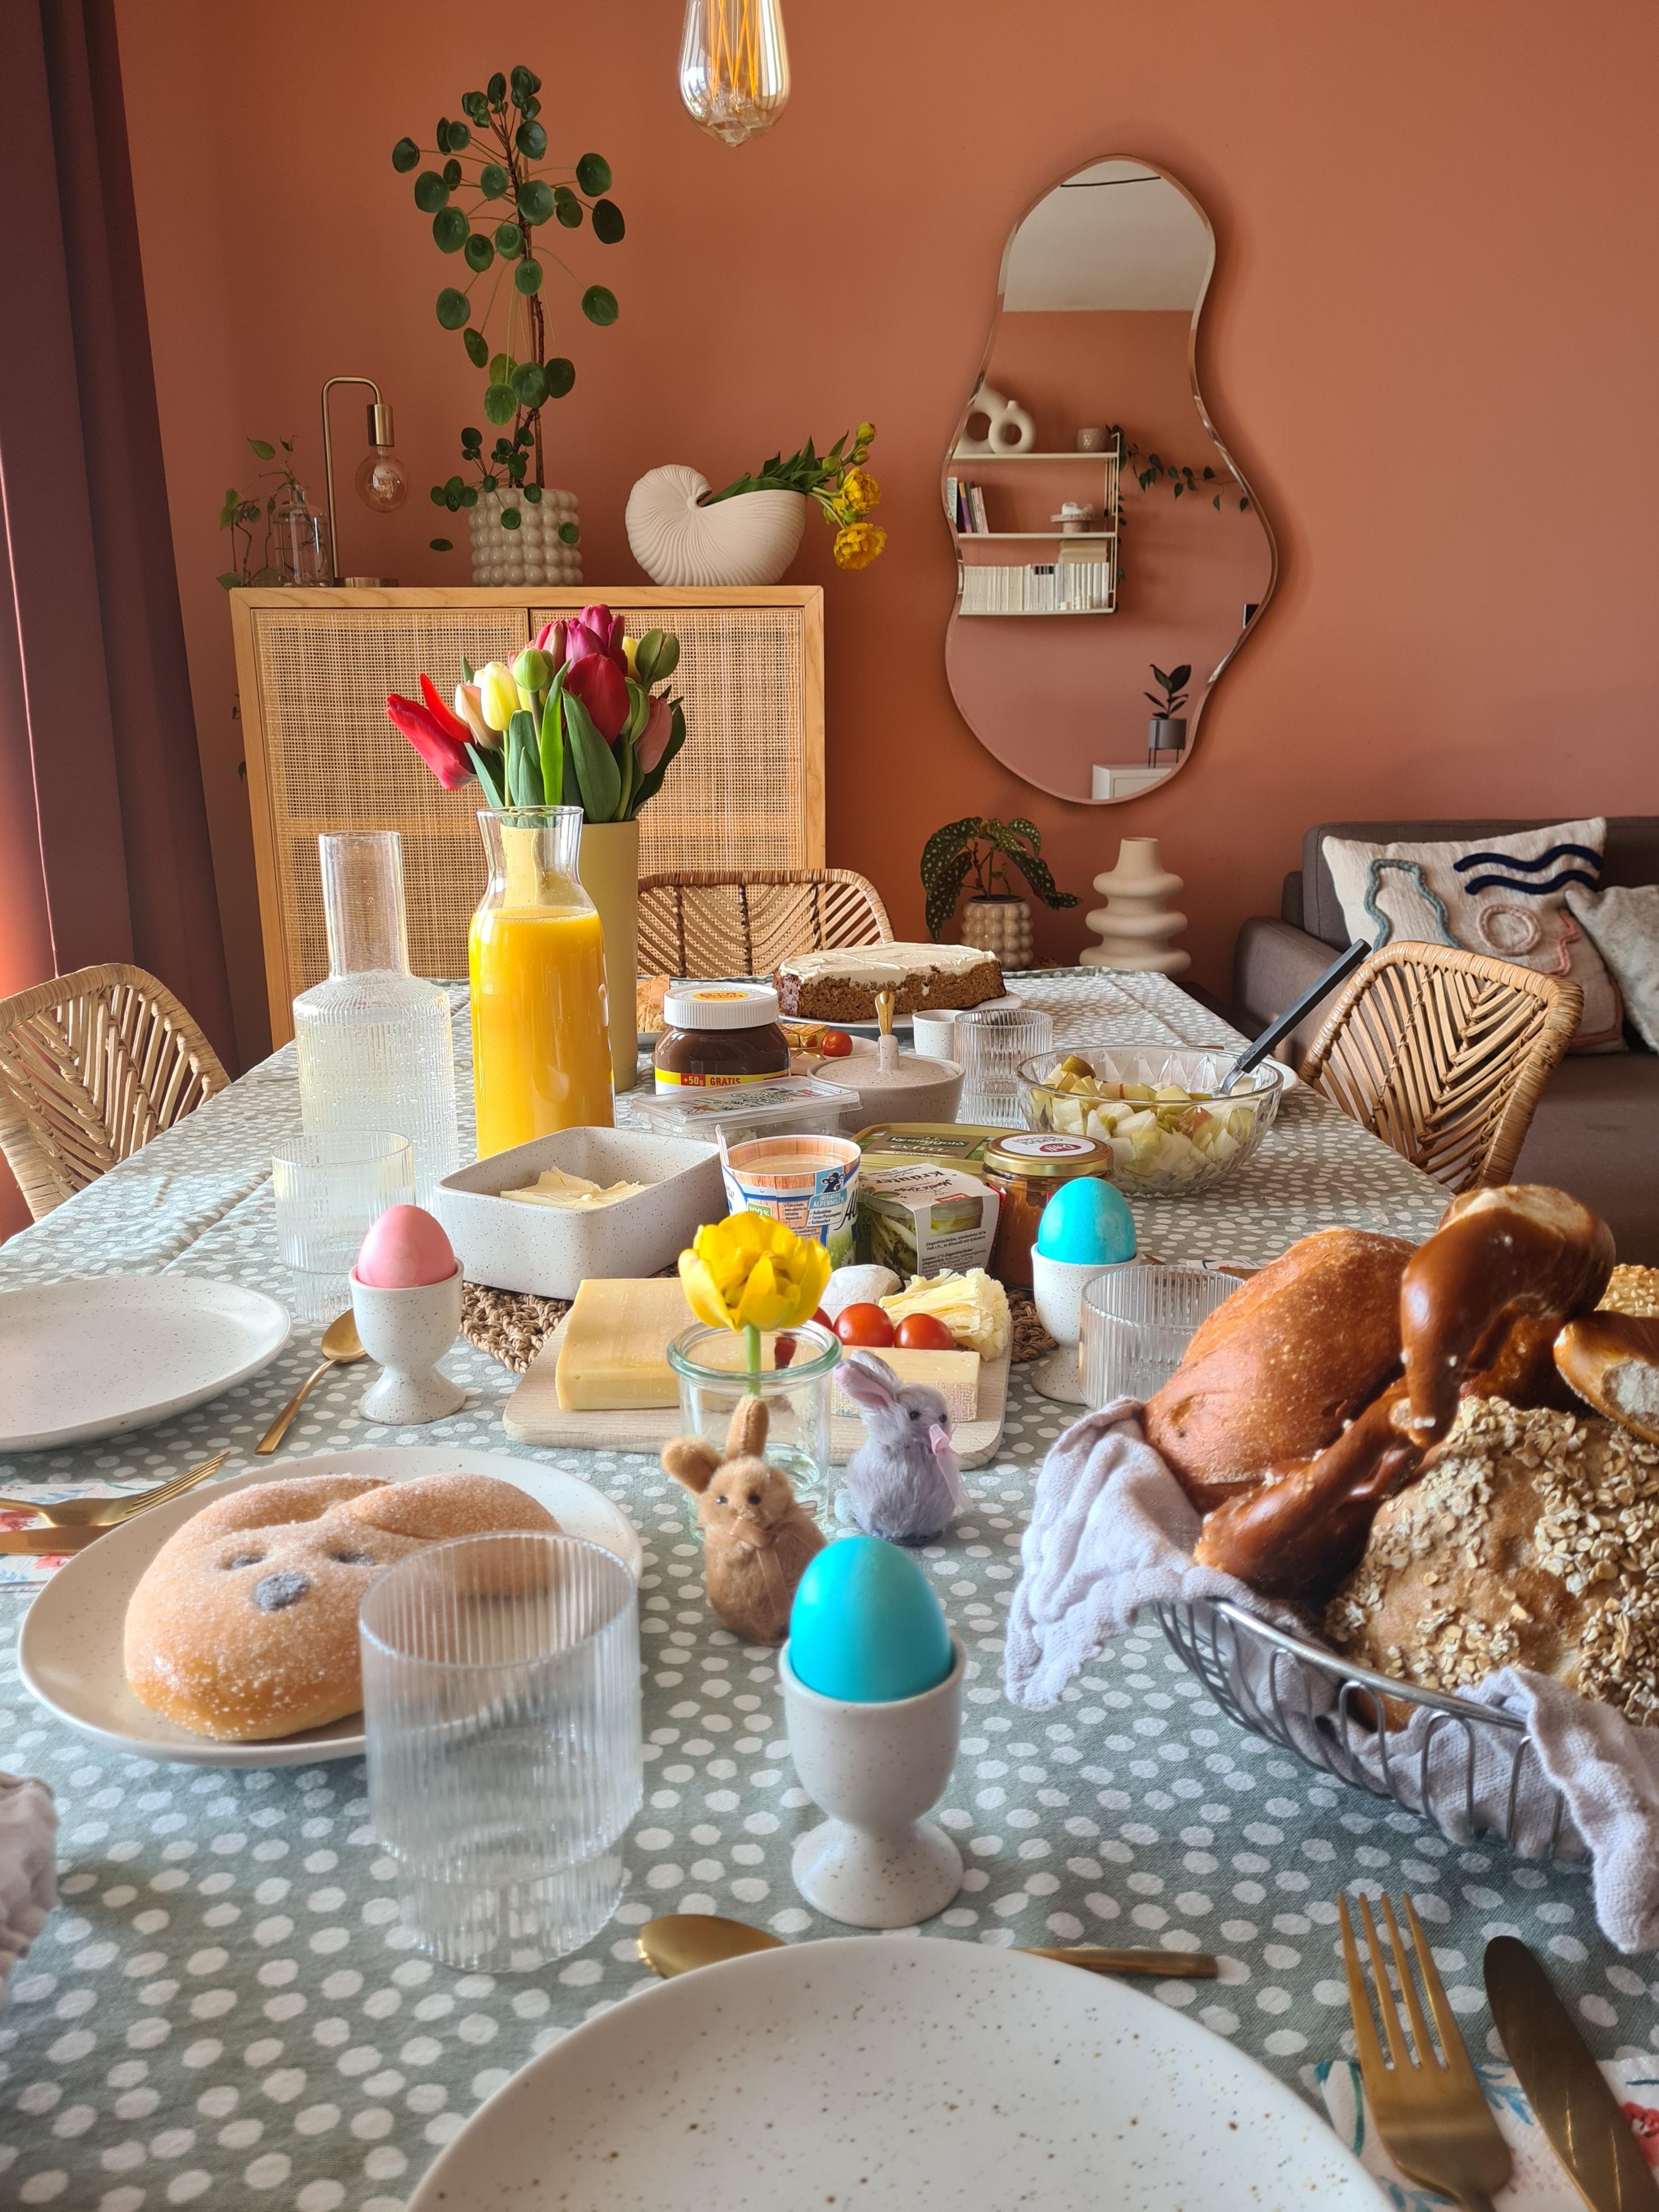 Osterfrühstück mit Freunden 🐰🌷
#ostern #tischdeko #odterdeko #brunch #esstisch #wandfarbe